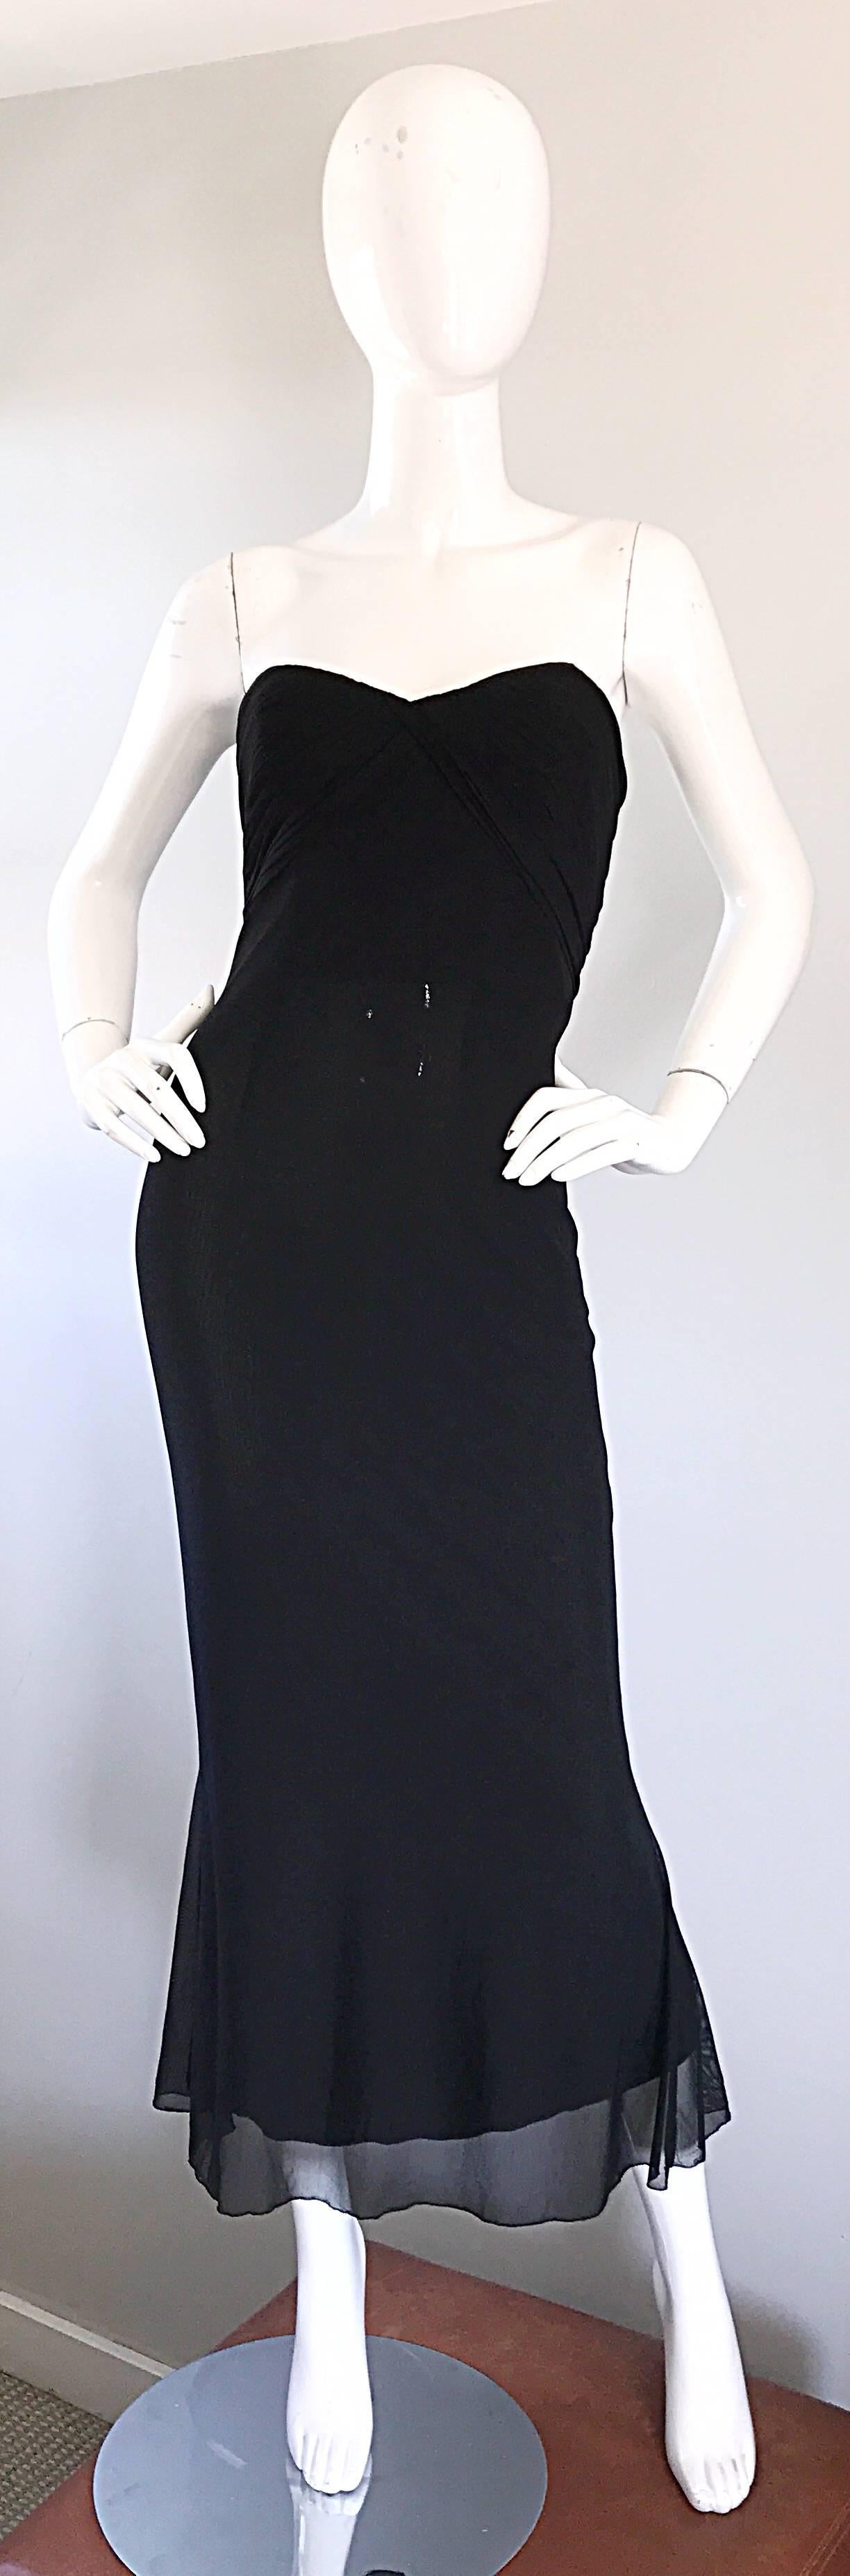 Klassisches 90er Jahre VICKY TIEL COUTURE schwarzes trägerloses Meerjungfrauenkleid / Maxikleid aus Seidengewebe! Mit dem charakteristischen Tiel-Faltenwurf an der Büste. Tolle Passform, die sich an den Körper anpasst. Schwarzes Mesh überlagert